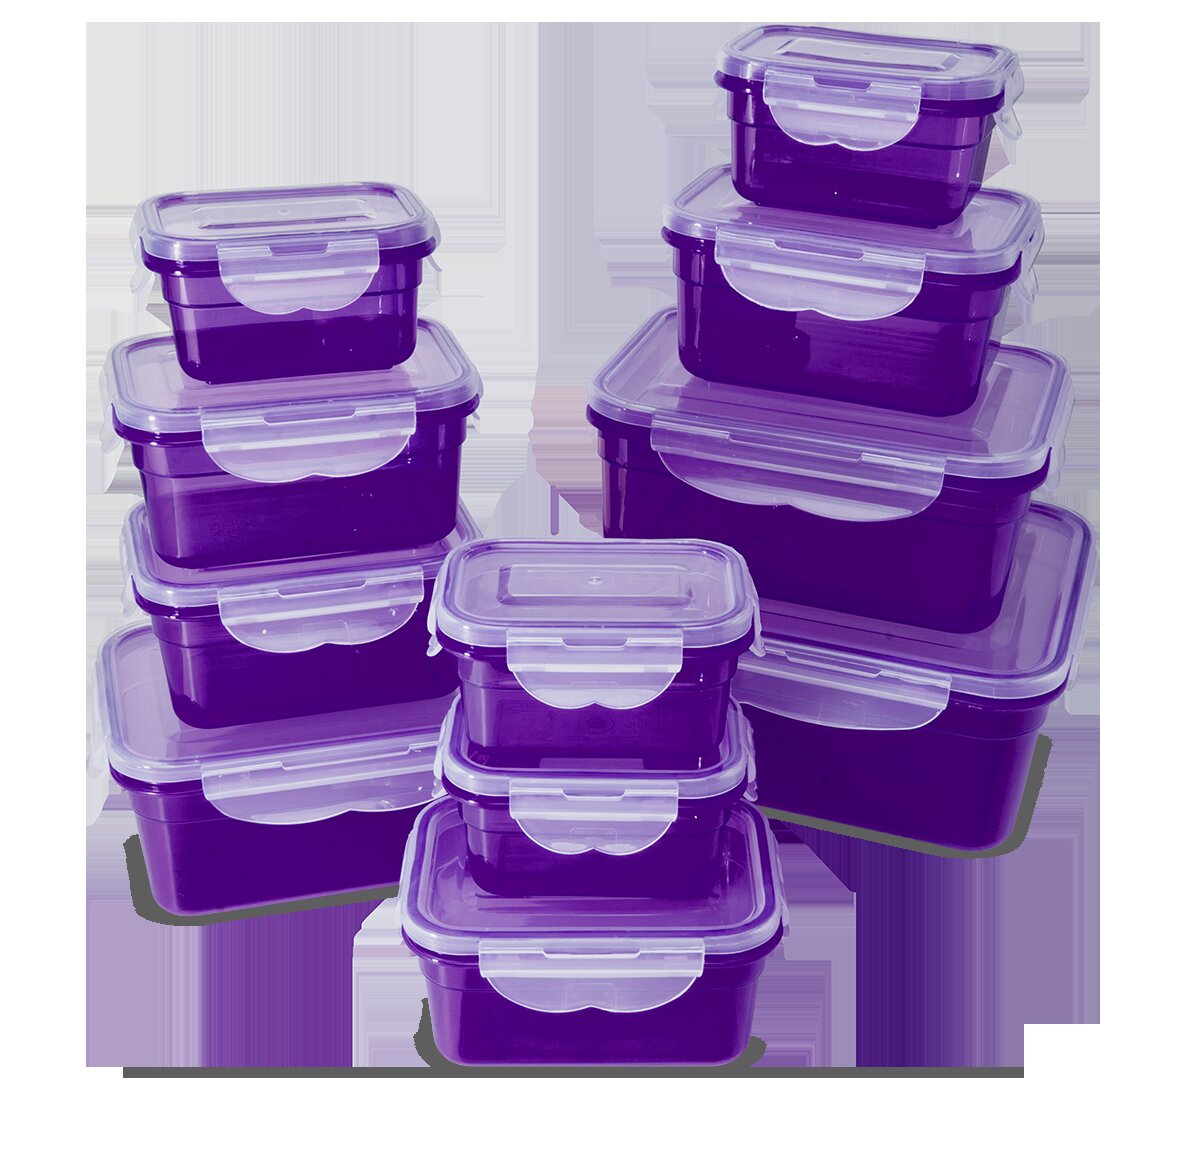 & ClearAmbient Luftdichte Aufbewahrungsboxen Frischhaltedosen-Set, Klickverschluss, Mit Bewertungen